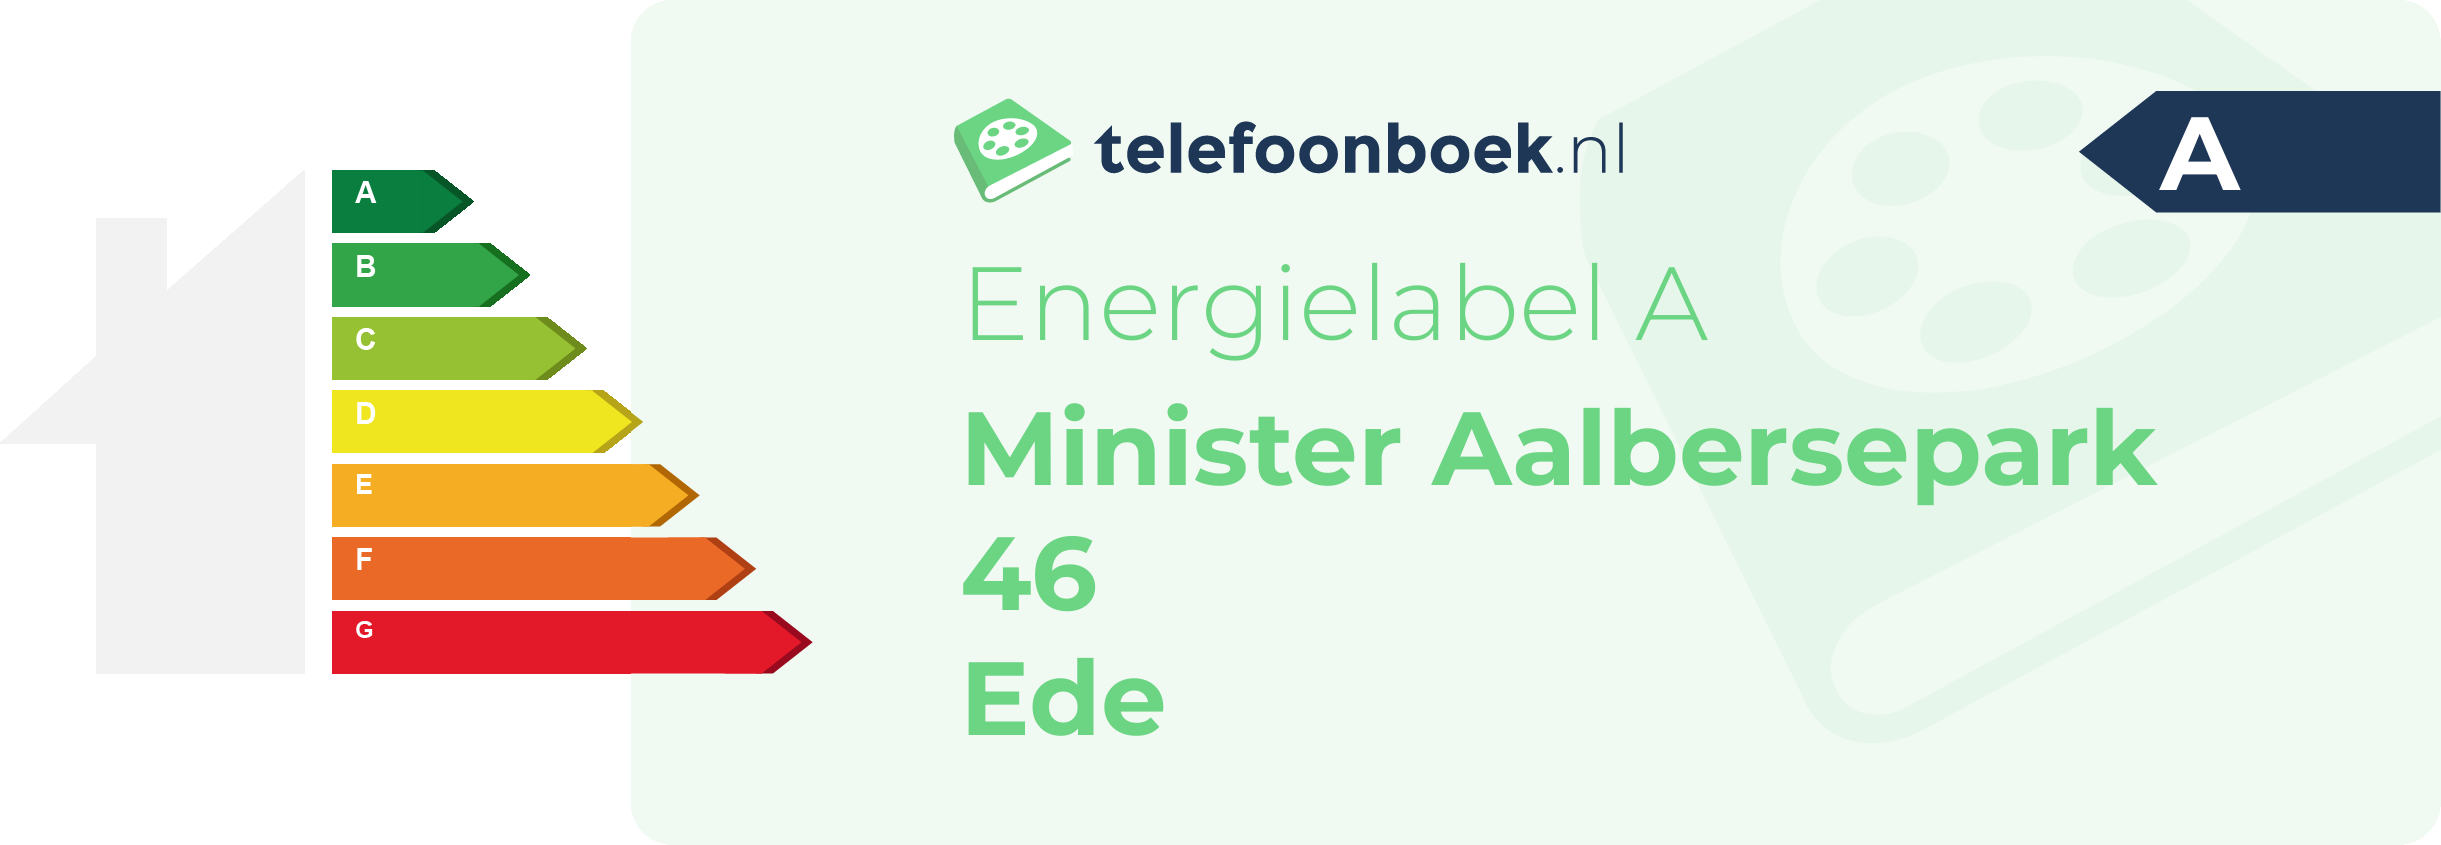 Energielabel Minister Aalbersepark 46 Ede